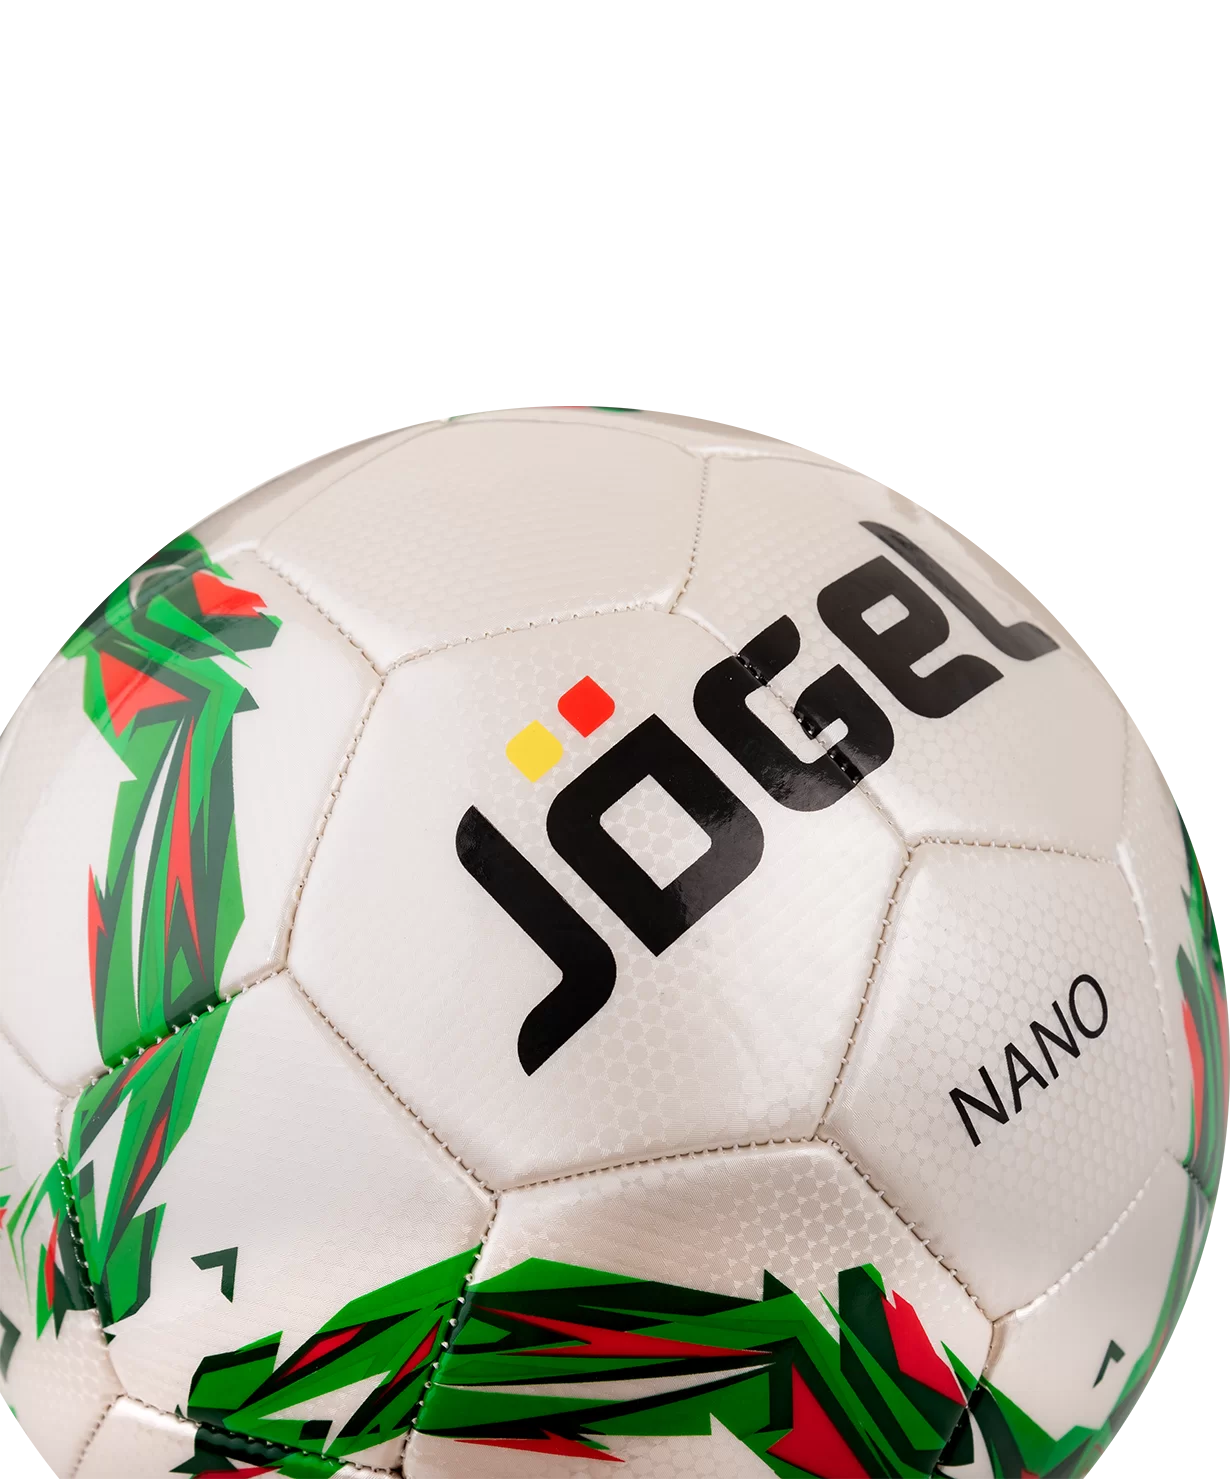 Фото Мяч футбольный Jögel JS-210 Nano №4 УТ-00012388 со склада магазина СпортСЕ